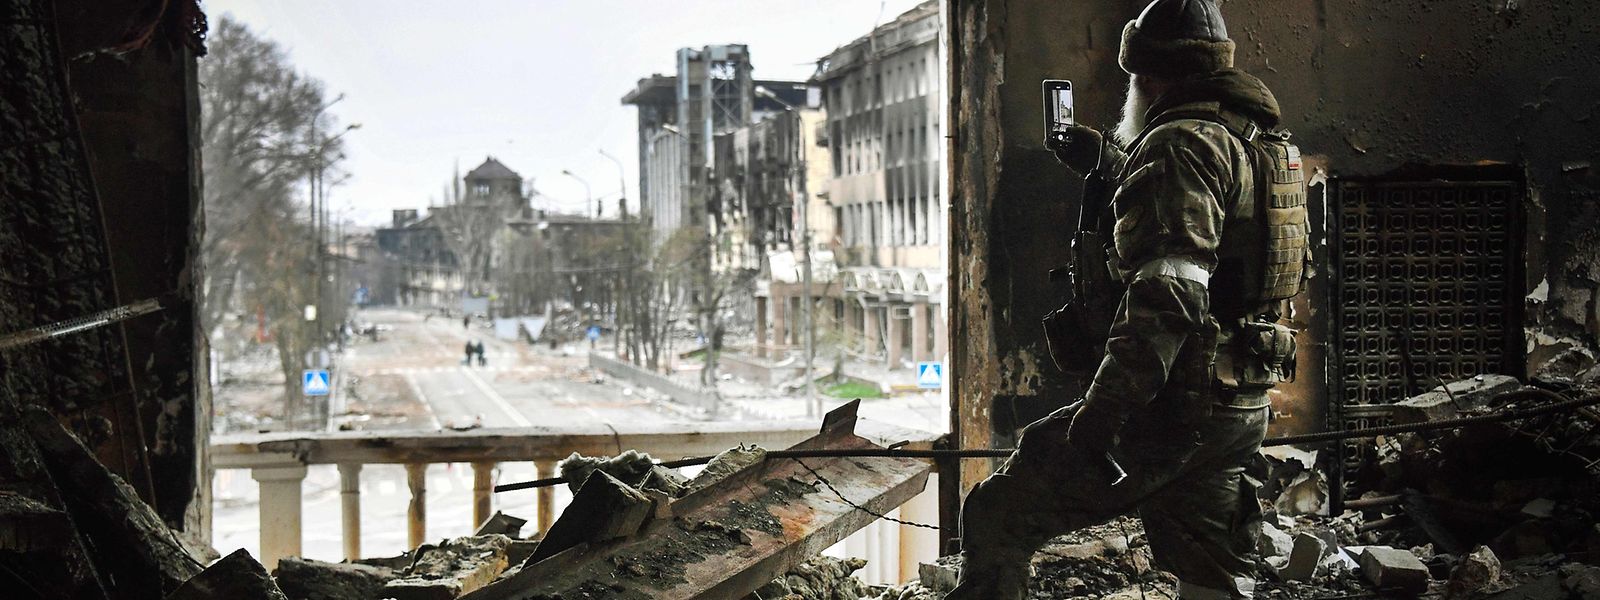 Archivbild vom 12. April. Ein russischer Soldat im zerbombten Theater von Mariupol.